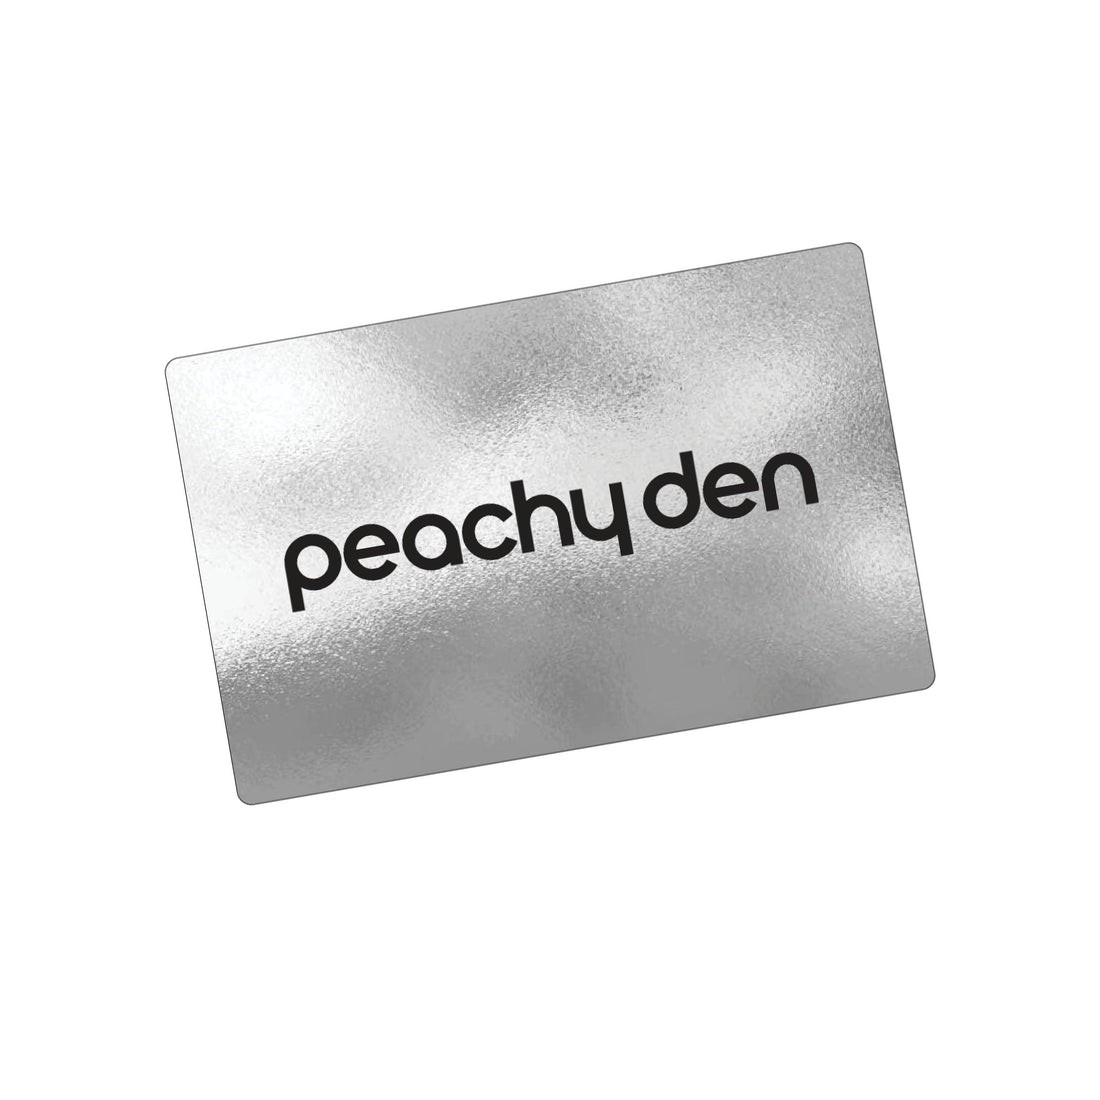 Peachy Den Gift Card - Peachy Den